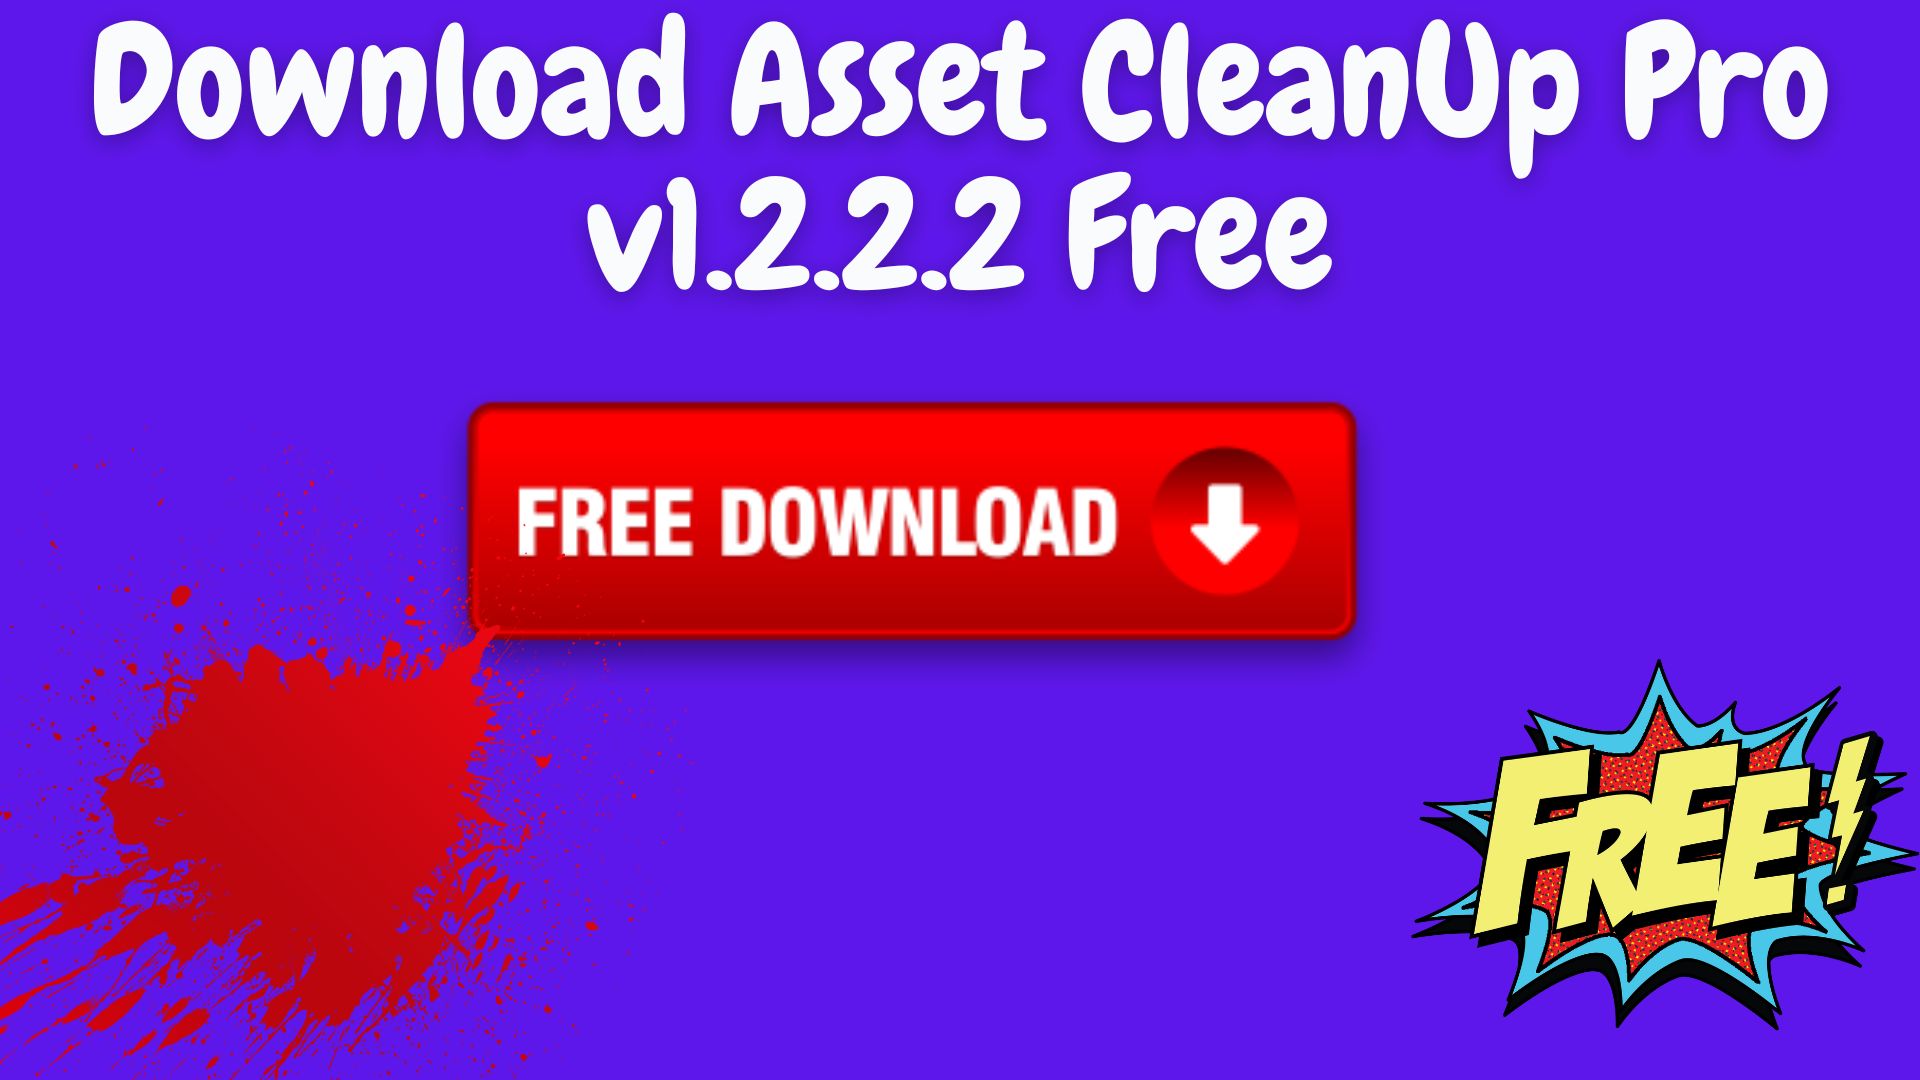 Download Asset Cleanup Pro V1.2.2.2 Free